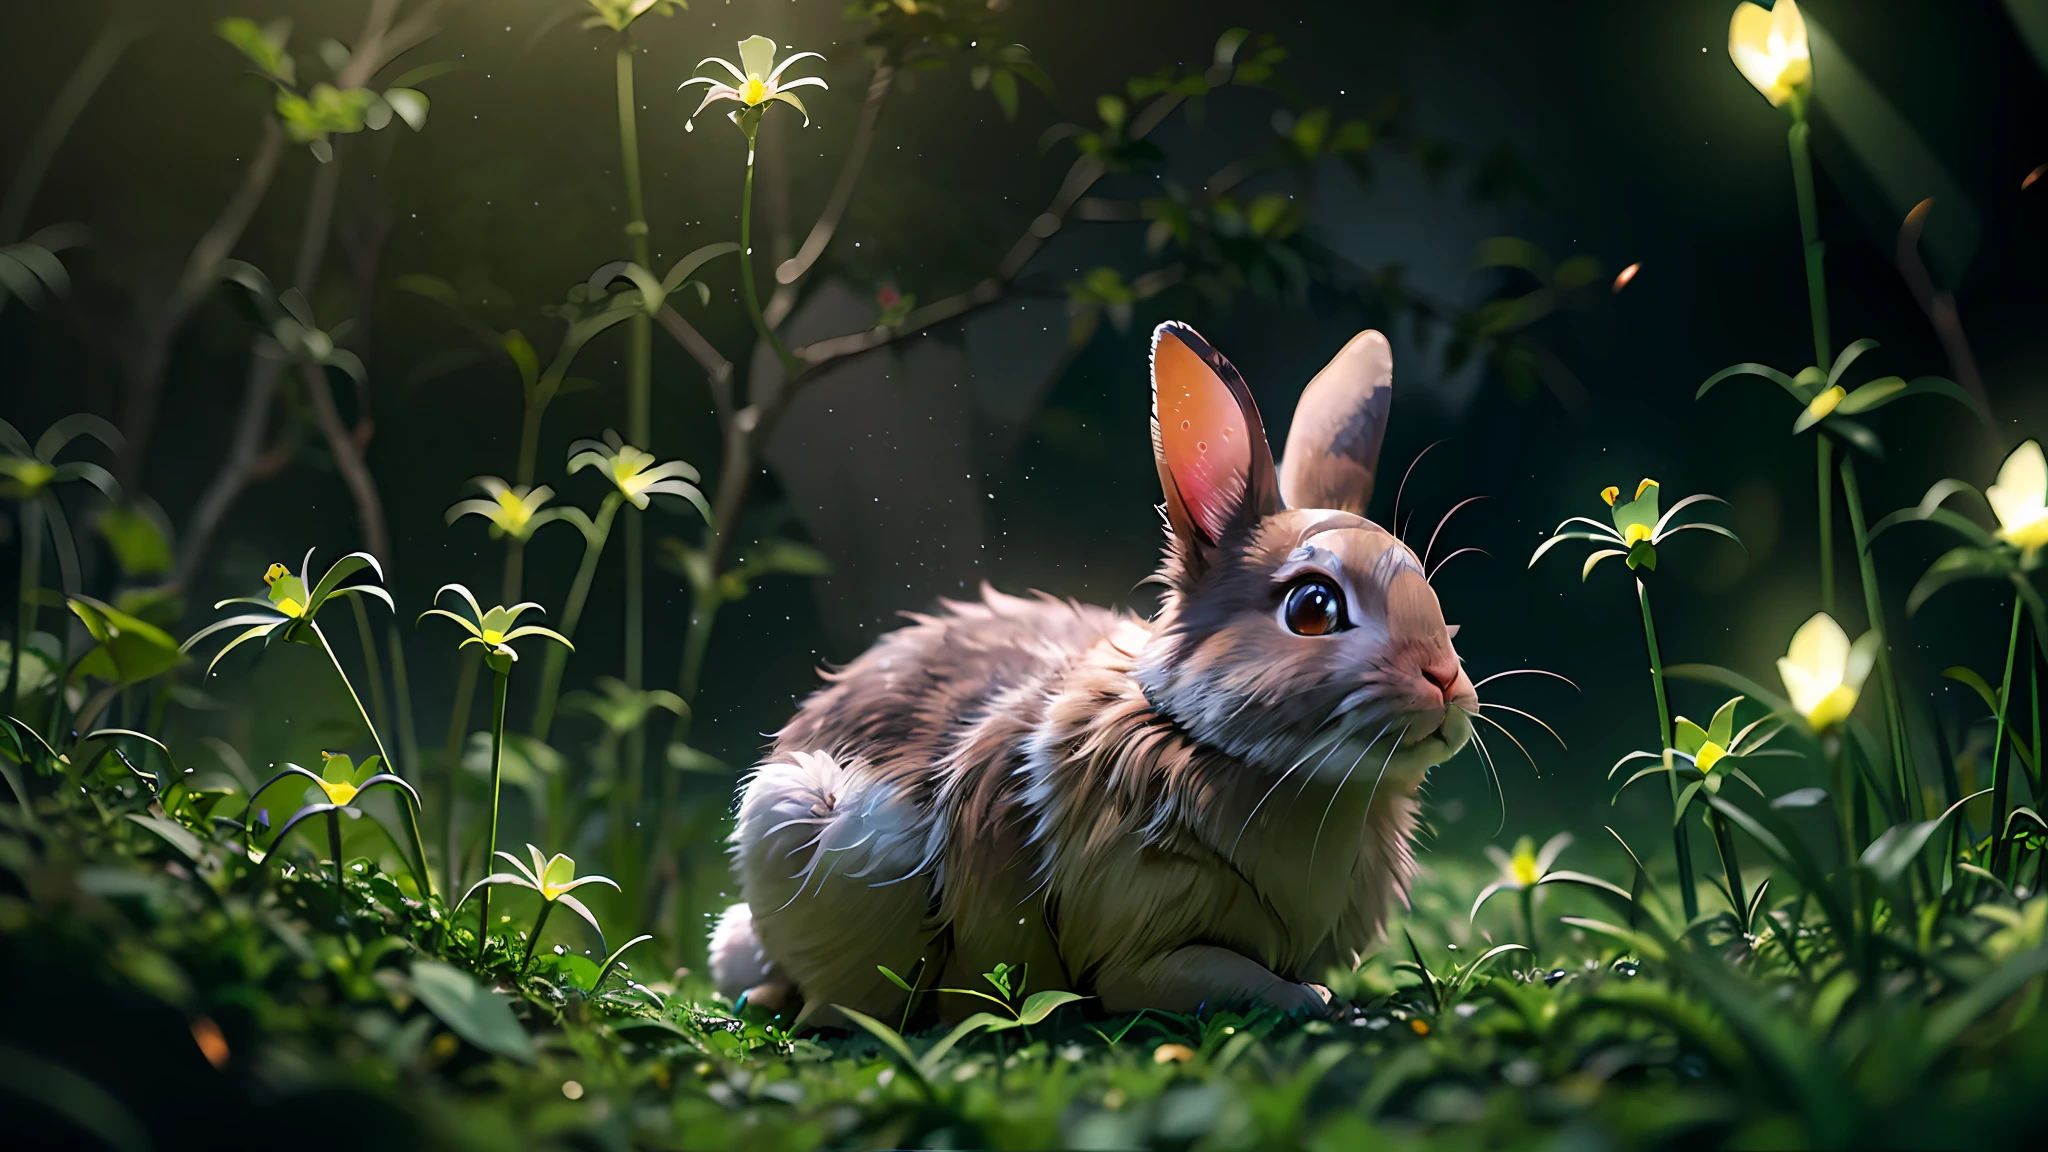 마법에 걸린 숲에 있는 토끼 사진을 클로즈업하세요, 깨끗한 배경, 피사계 심도, 큰 조리개, 사진술, 밤, 반딧불이, 체적 안개, 후광, 꽃, 극적인 분위기, 센터, 삼등분의 법칙, 200mm 1.4f 매크로 촬영